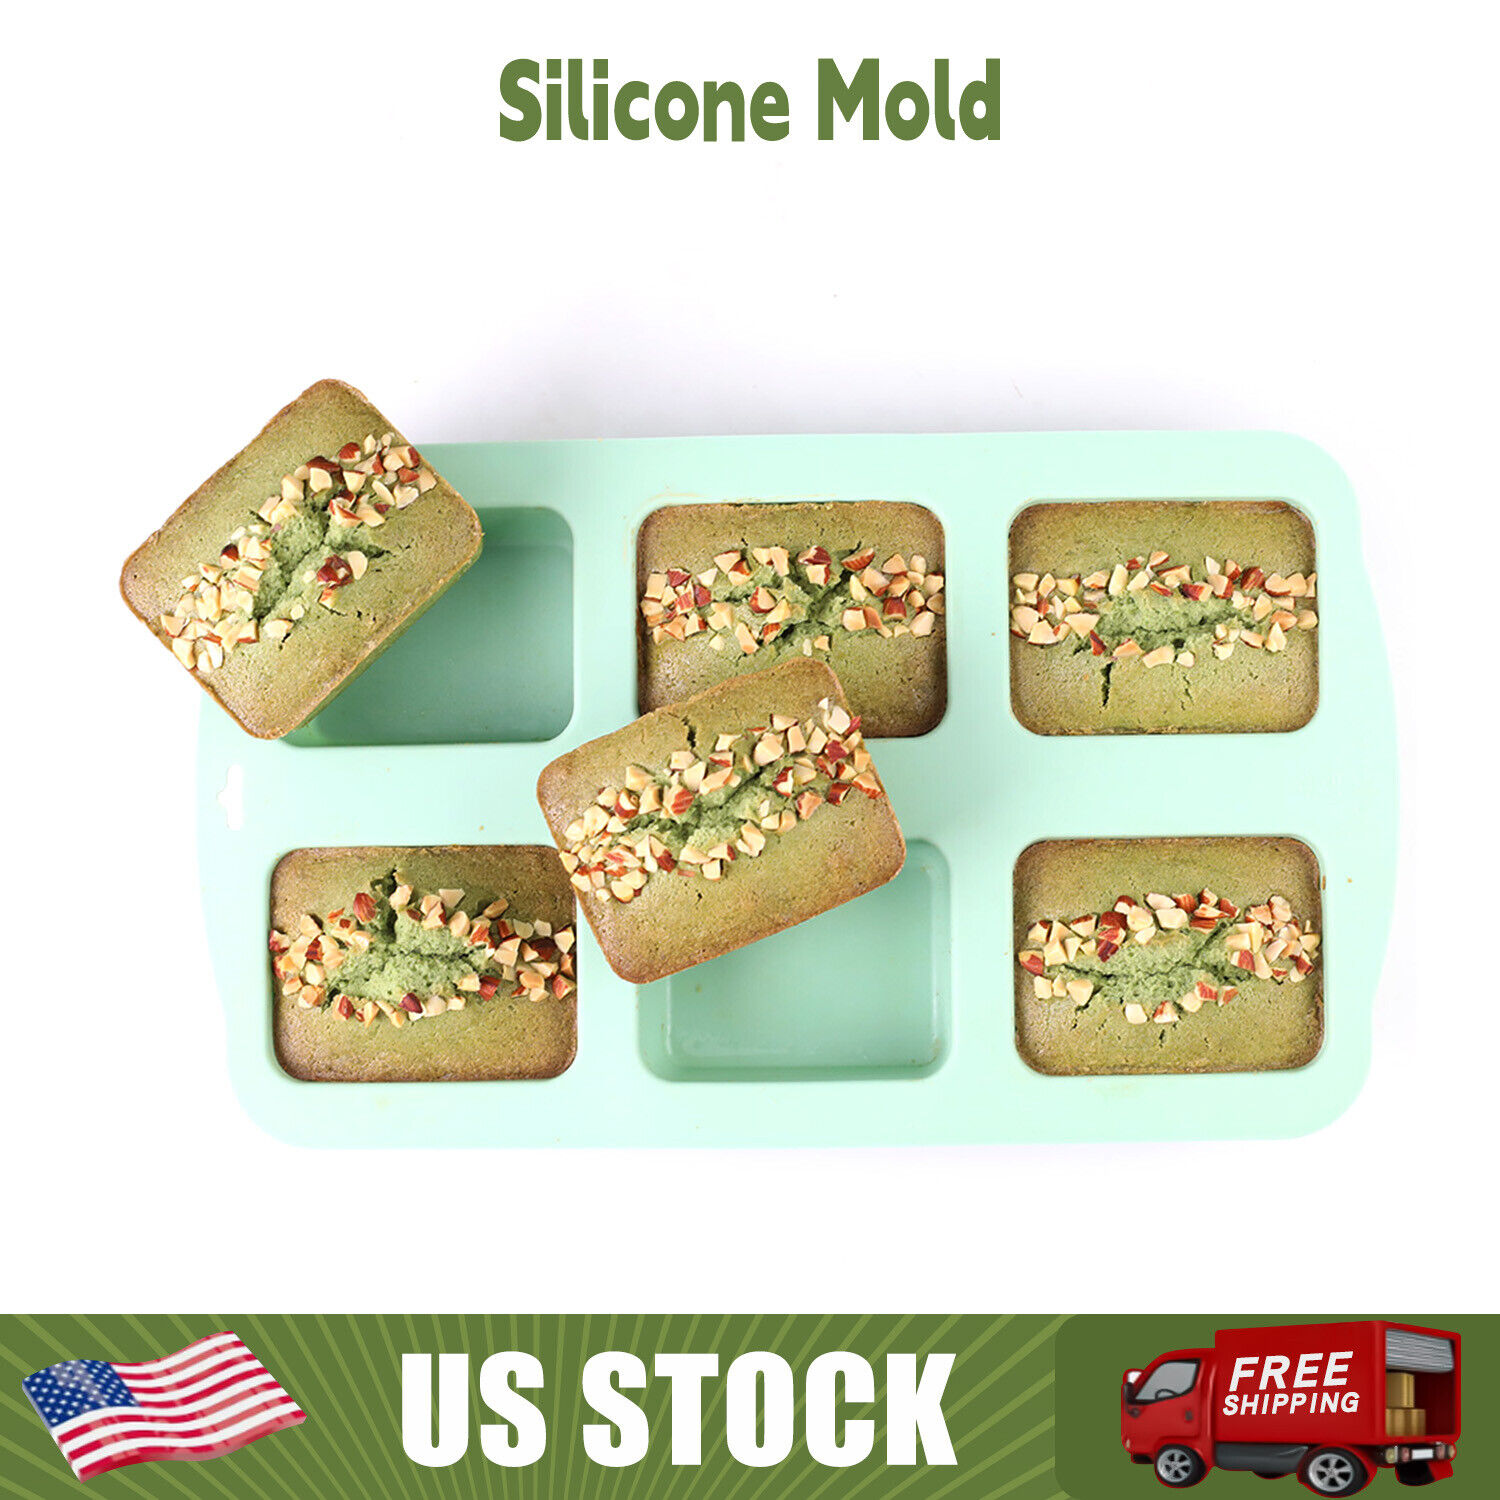 Silicone Mold Baking Mold Soap Mold Chocolate Mold Pound Cake Pan Non Stick